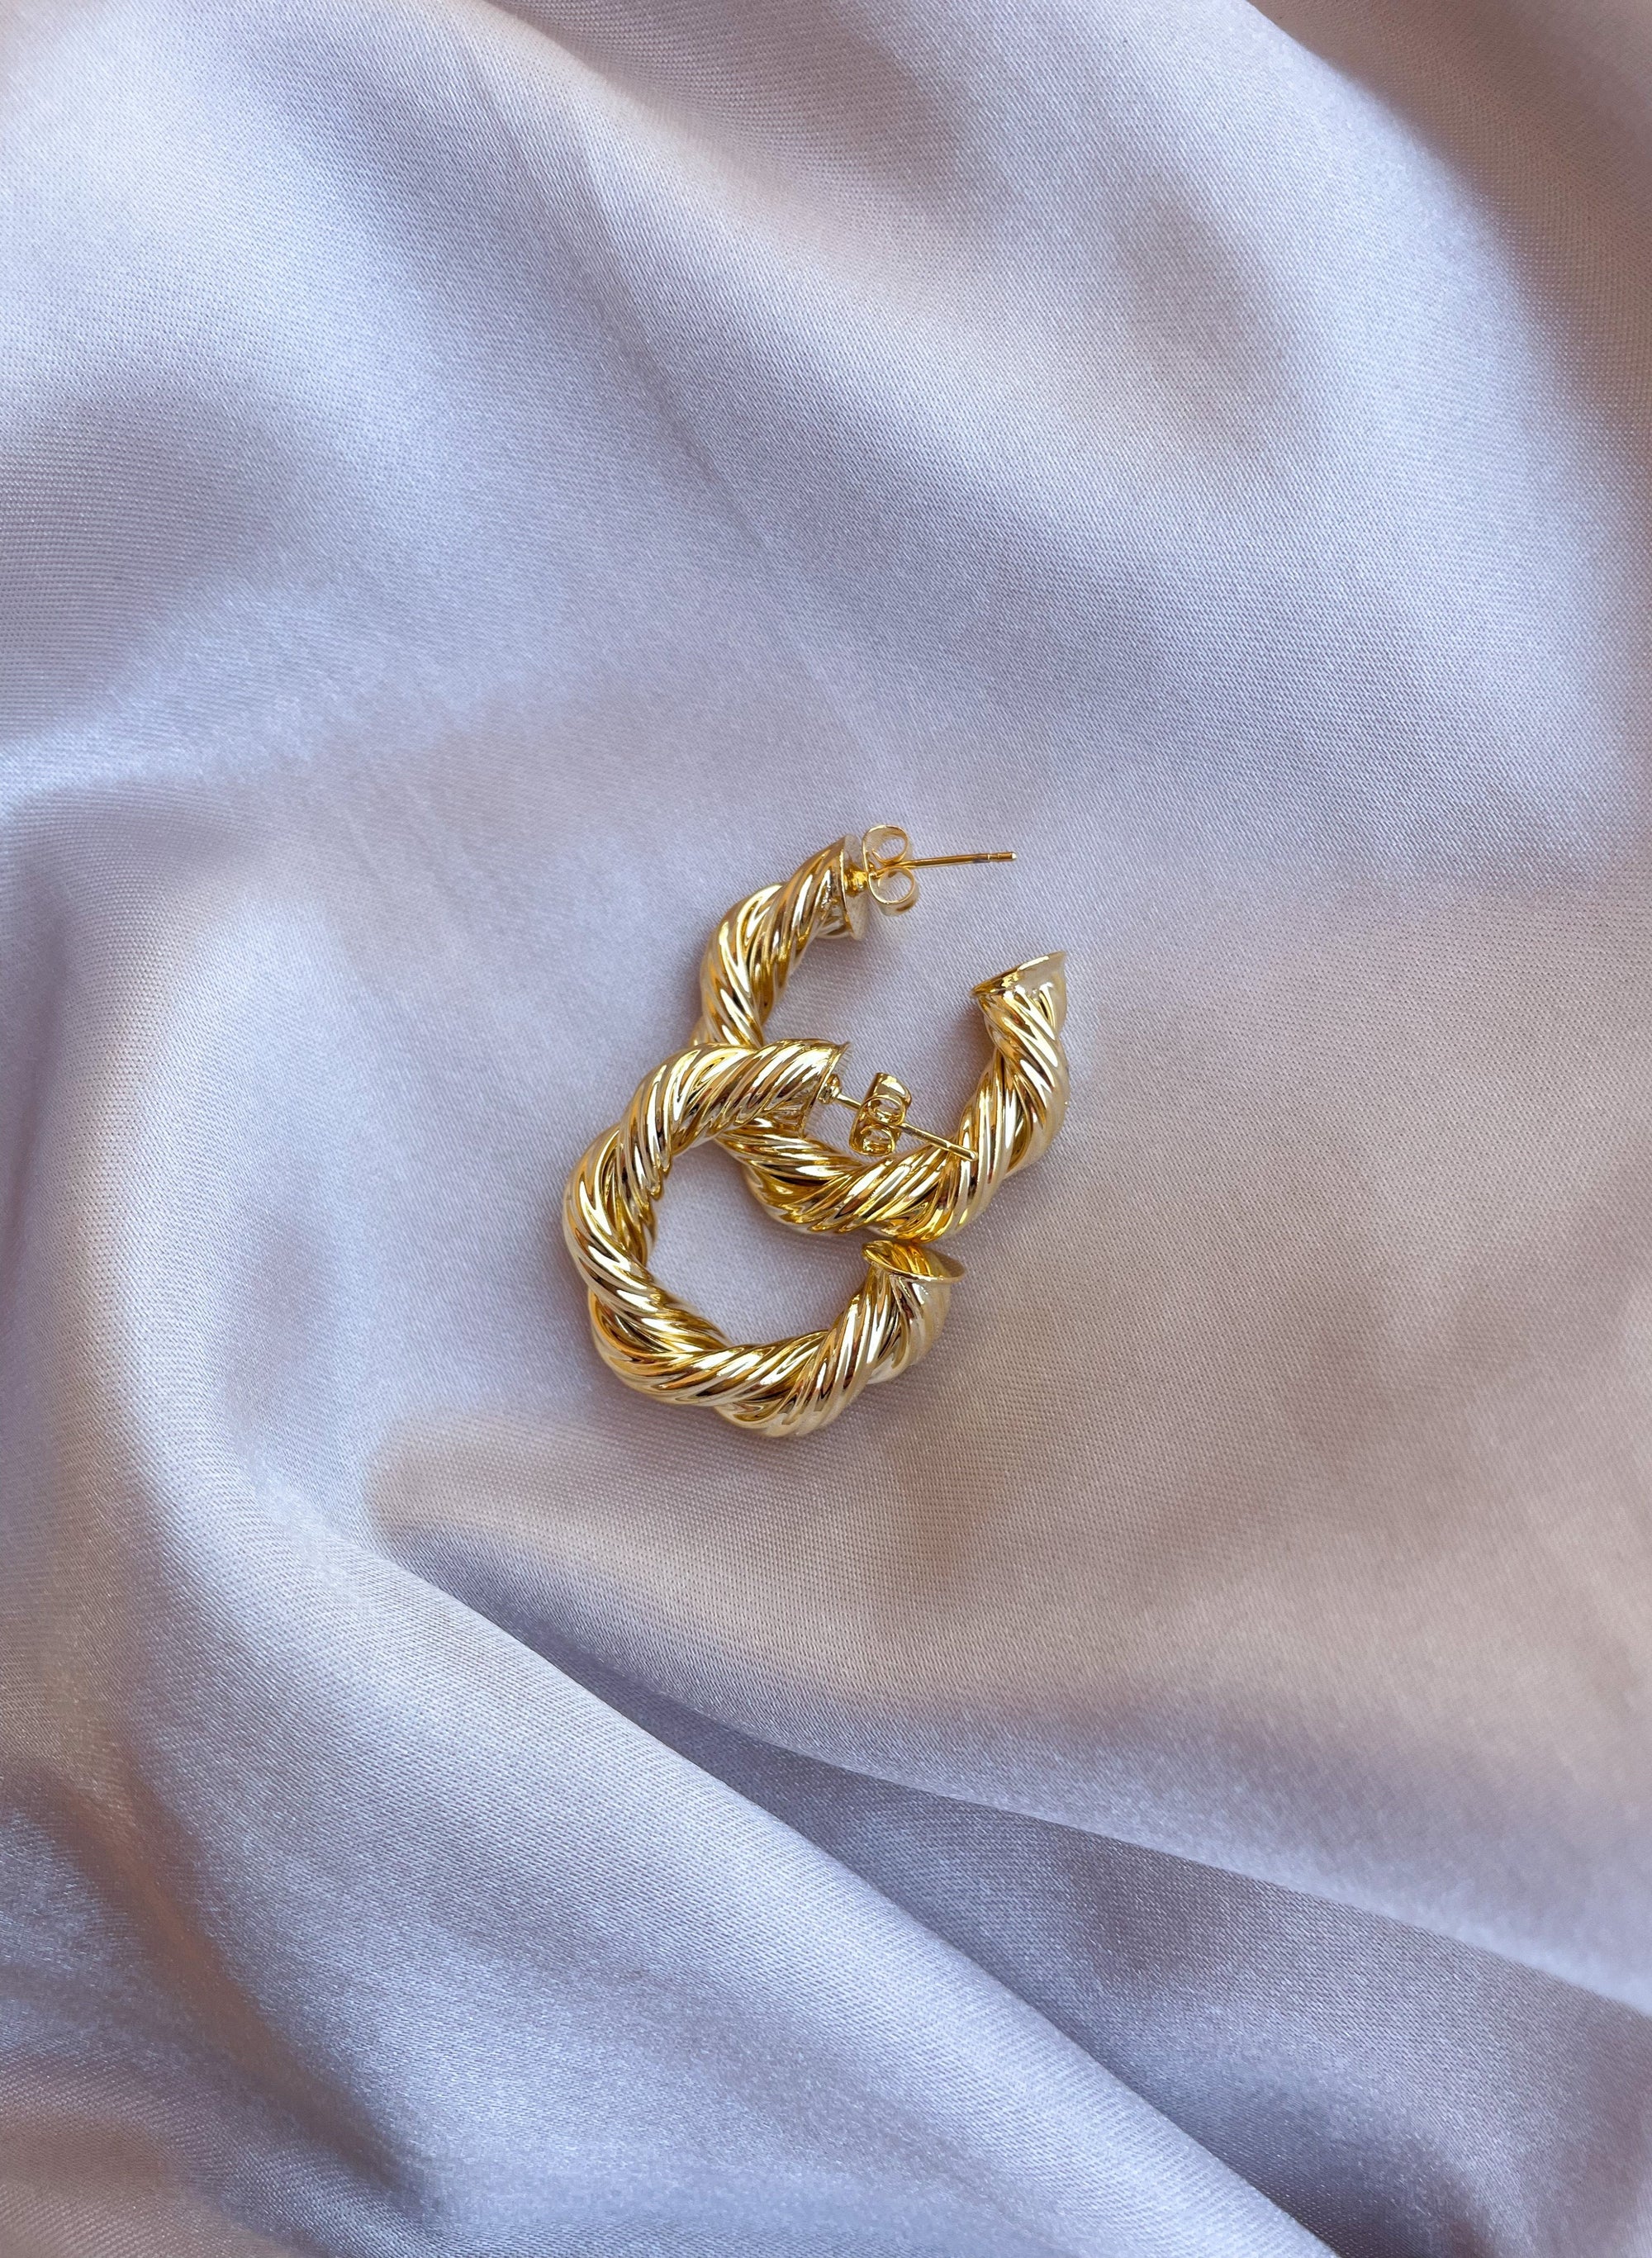 Vintage Inspired Gold Hoop Earrings